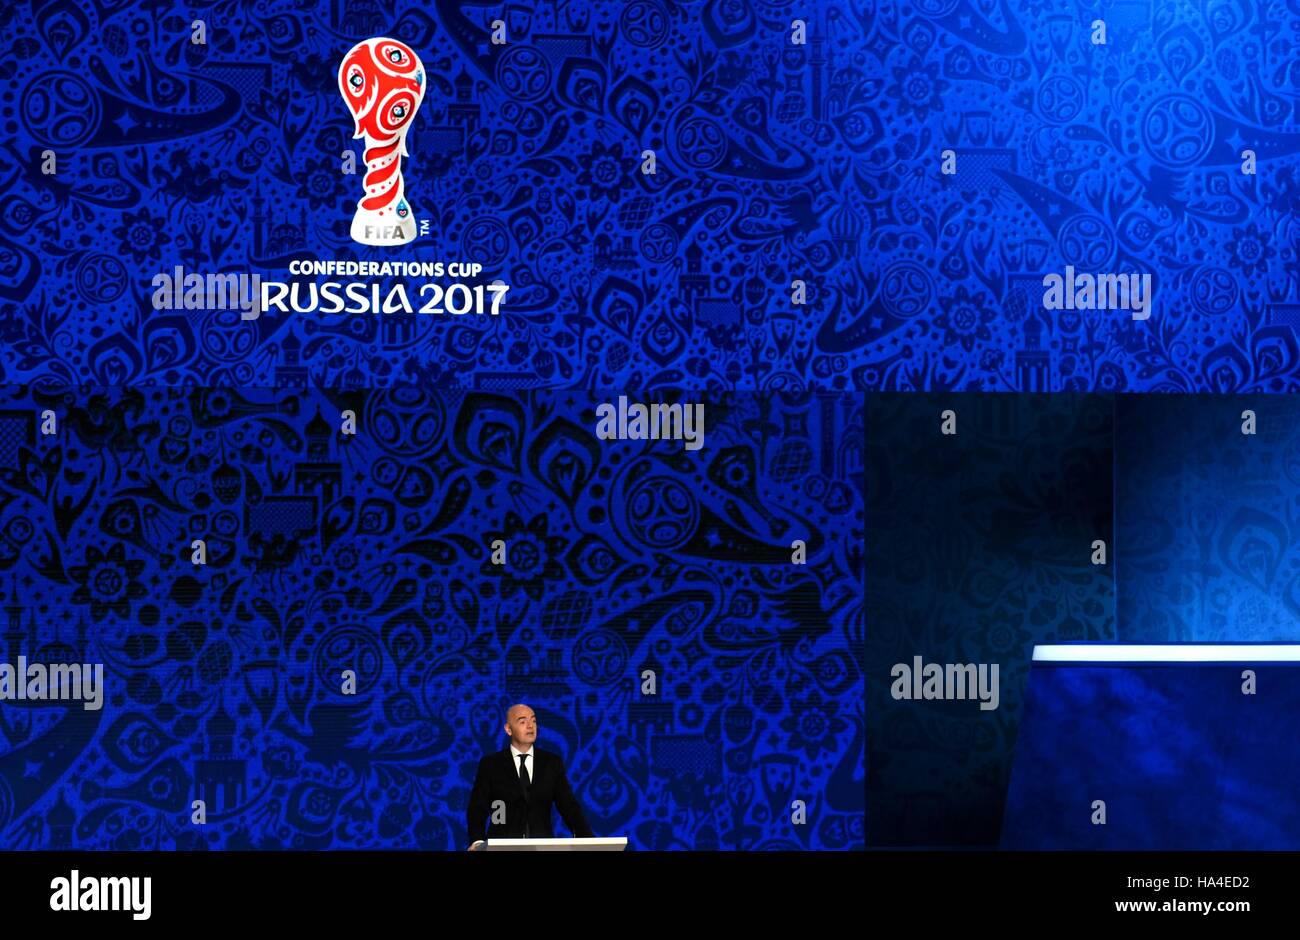 Kazan, Russia. 26 Nov, 2016. Presidente della FIFA Gianni Infantino risolve il tabellone ufficiale cerimonia per la Confederations Cup 2017 a Kazan, Russia, nov. 26, 2016. © Evgeny Sinitsyn/Xinhua/Alamy Live News Foto Stock